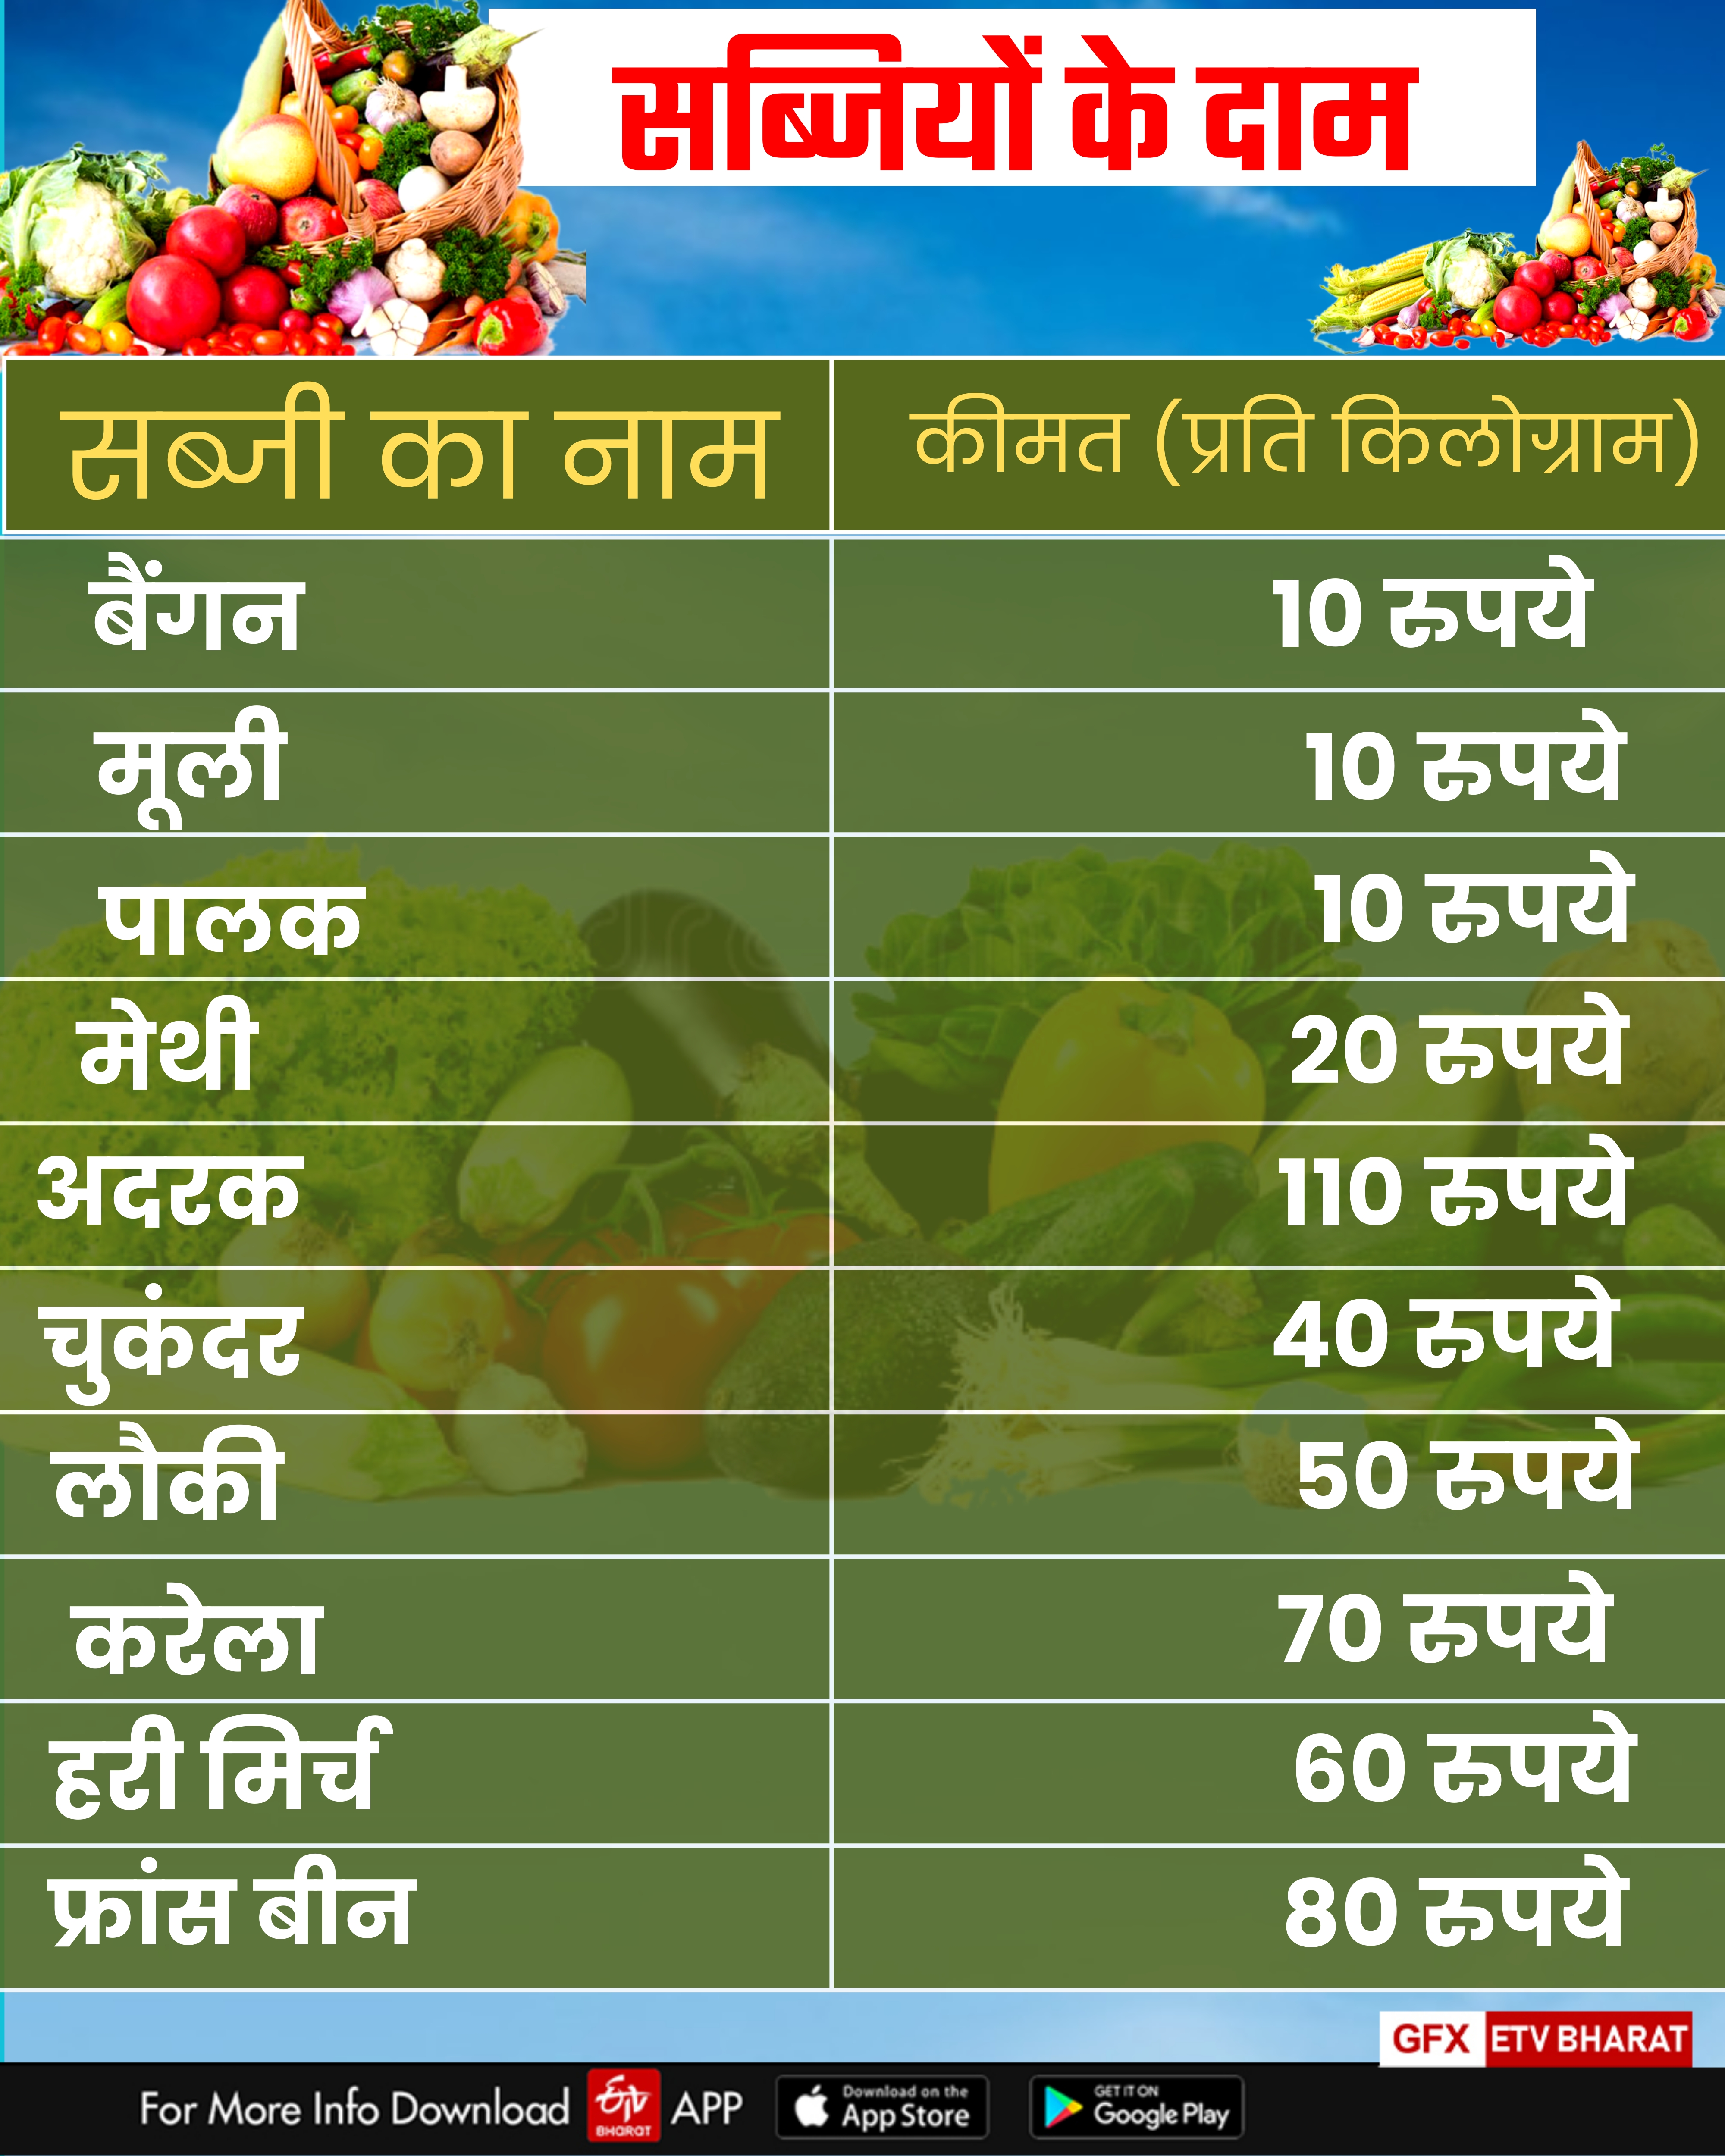 Fruits Price in Haryana